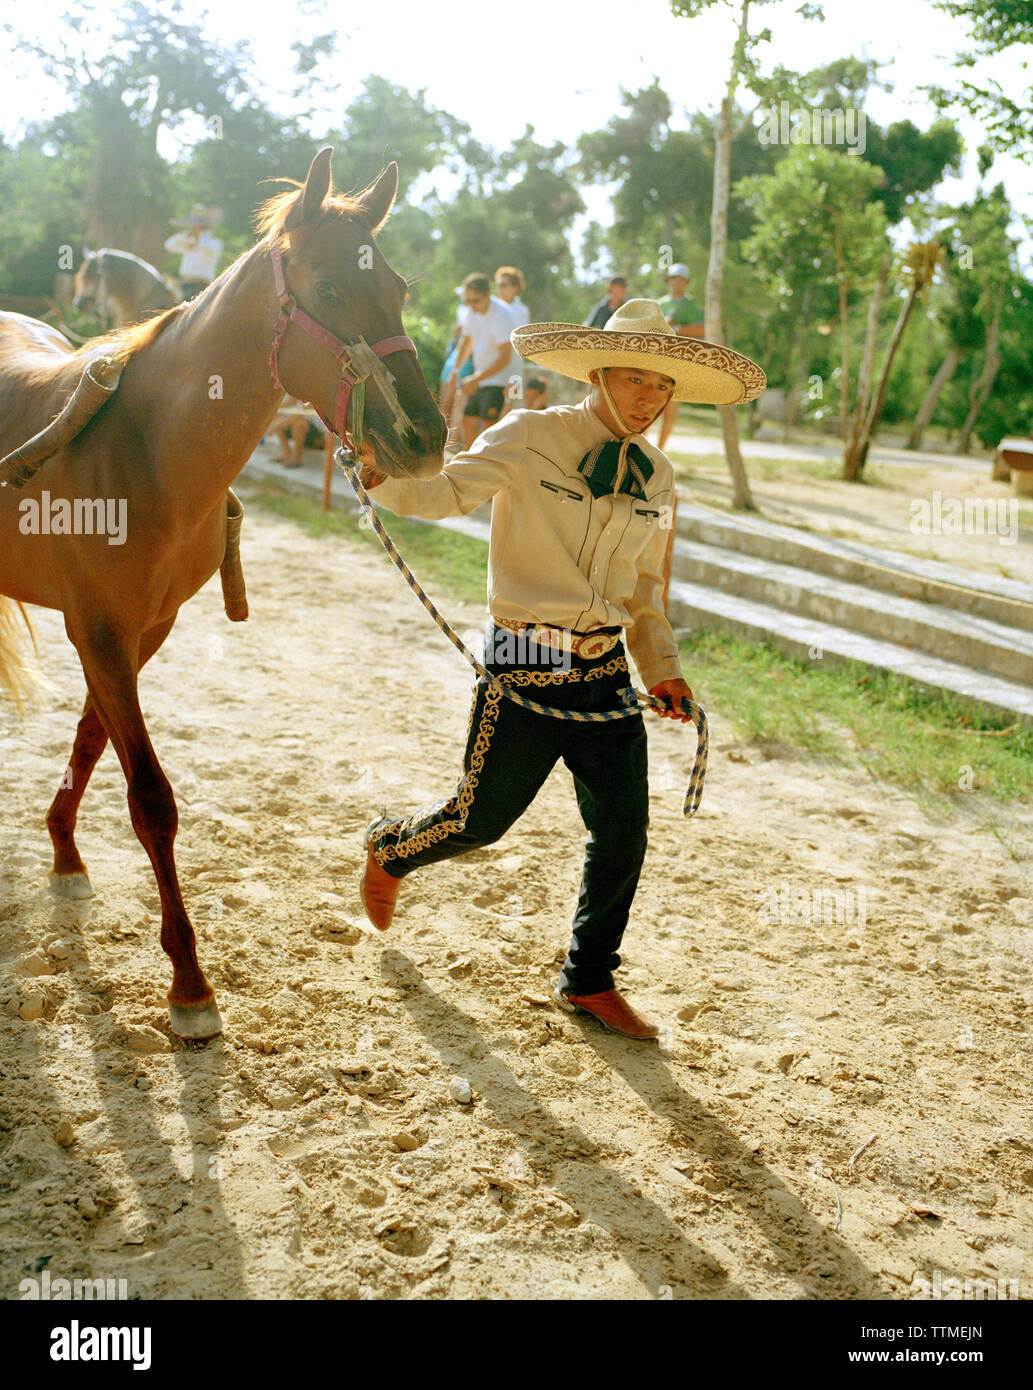 MEXICO, Maya Riviera, Mexican Cowboy leading his horse, Yucatan Peninsula Stock Photo